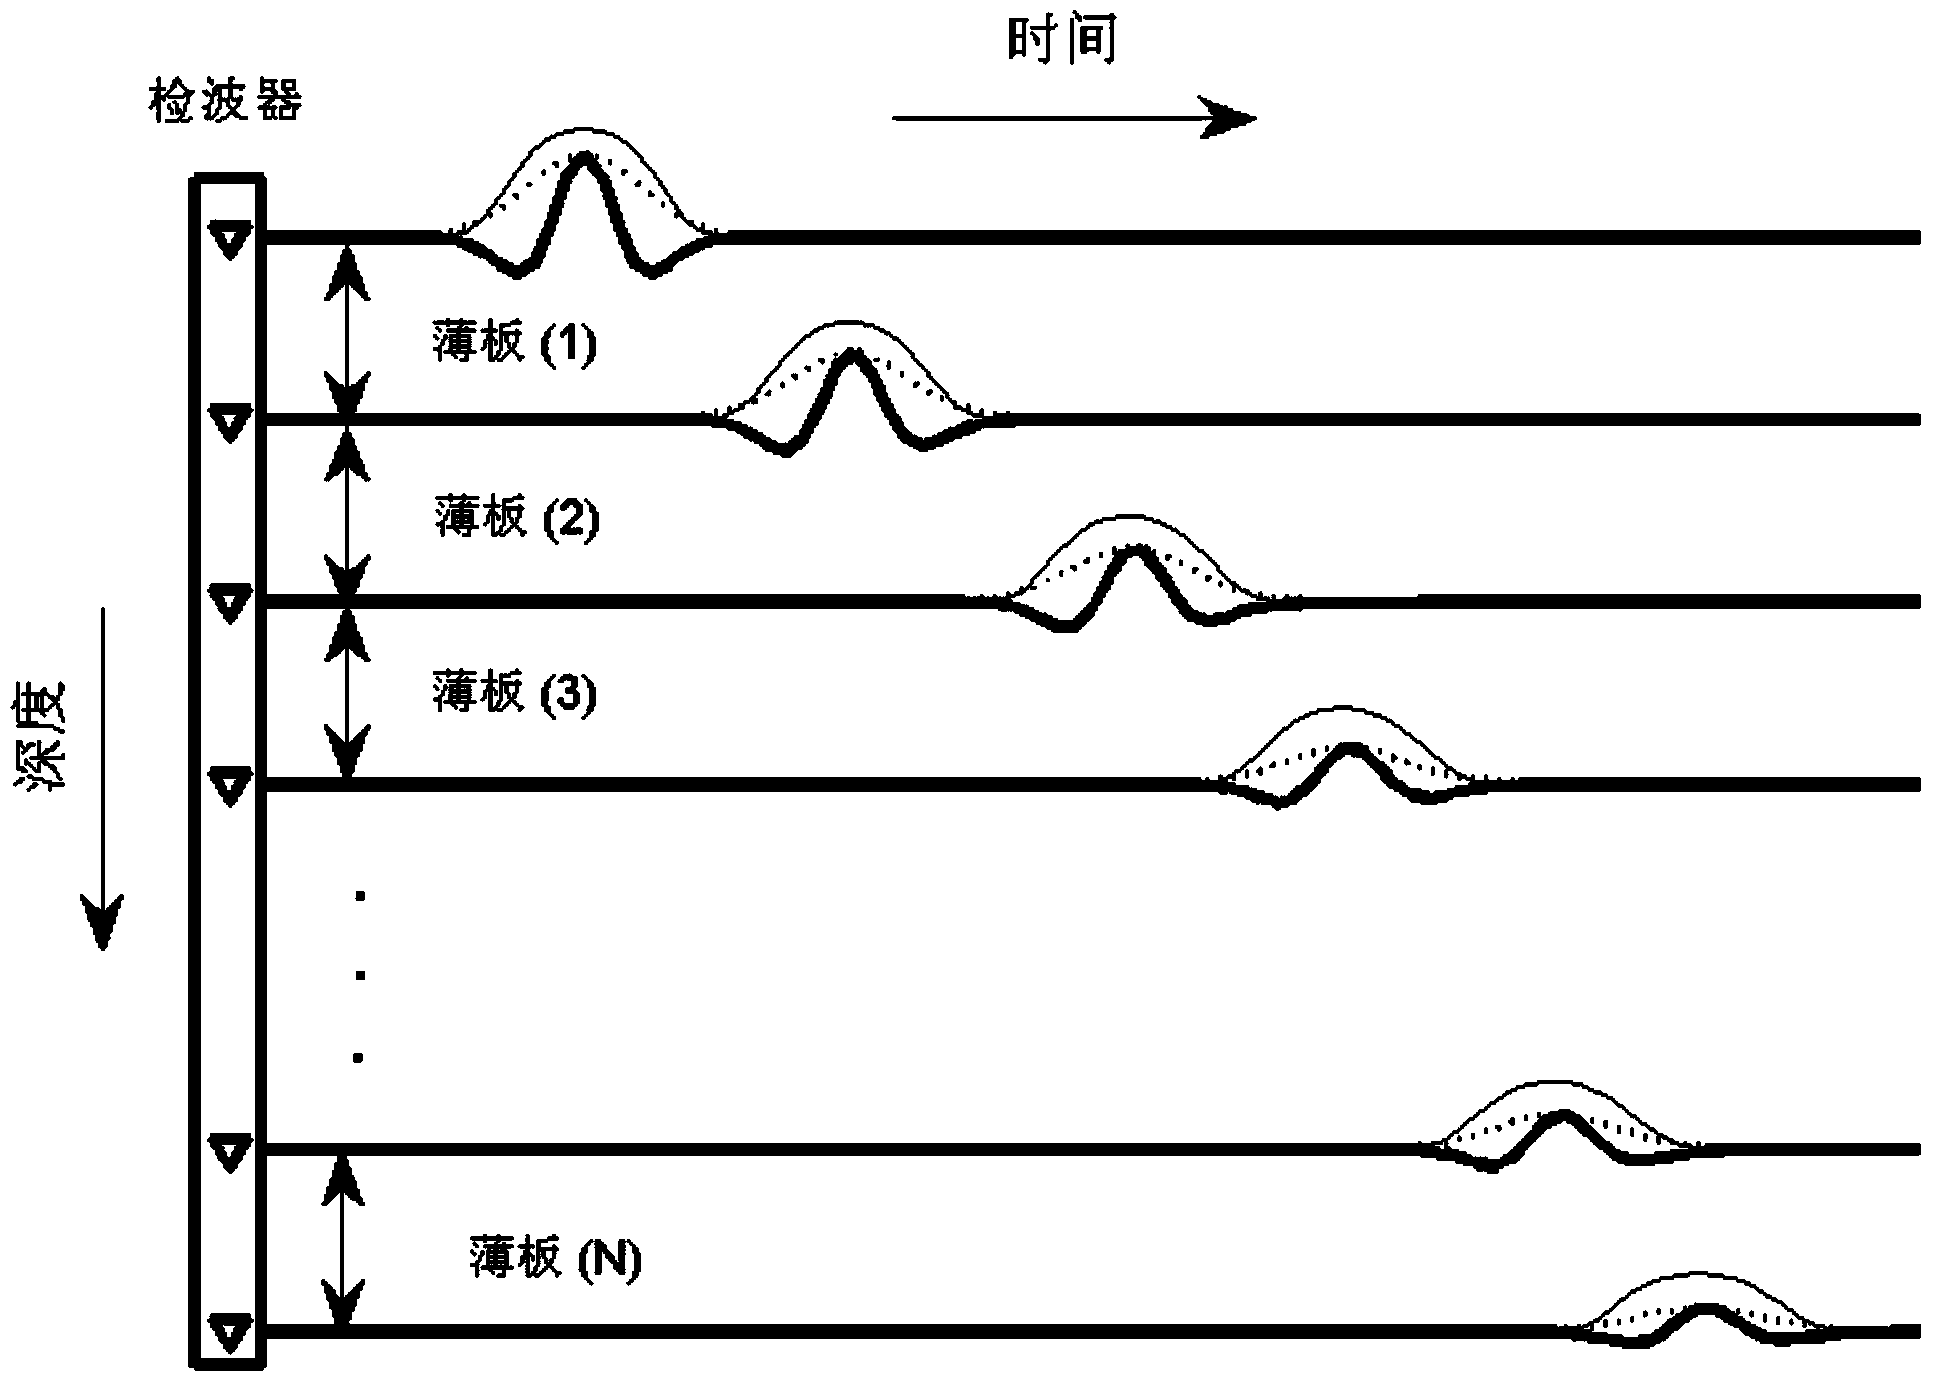 Method for estimating stratum medium quality factors based on seismic signal envelope peak